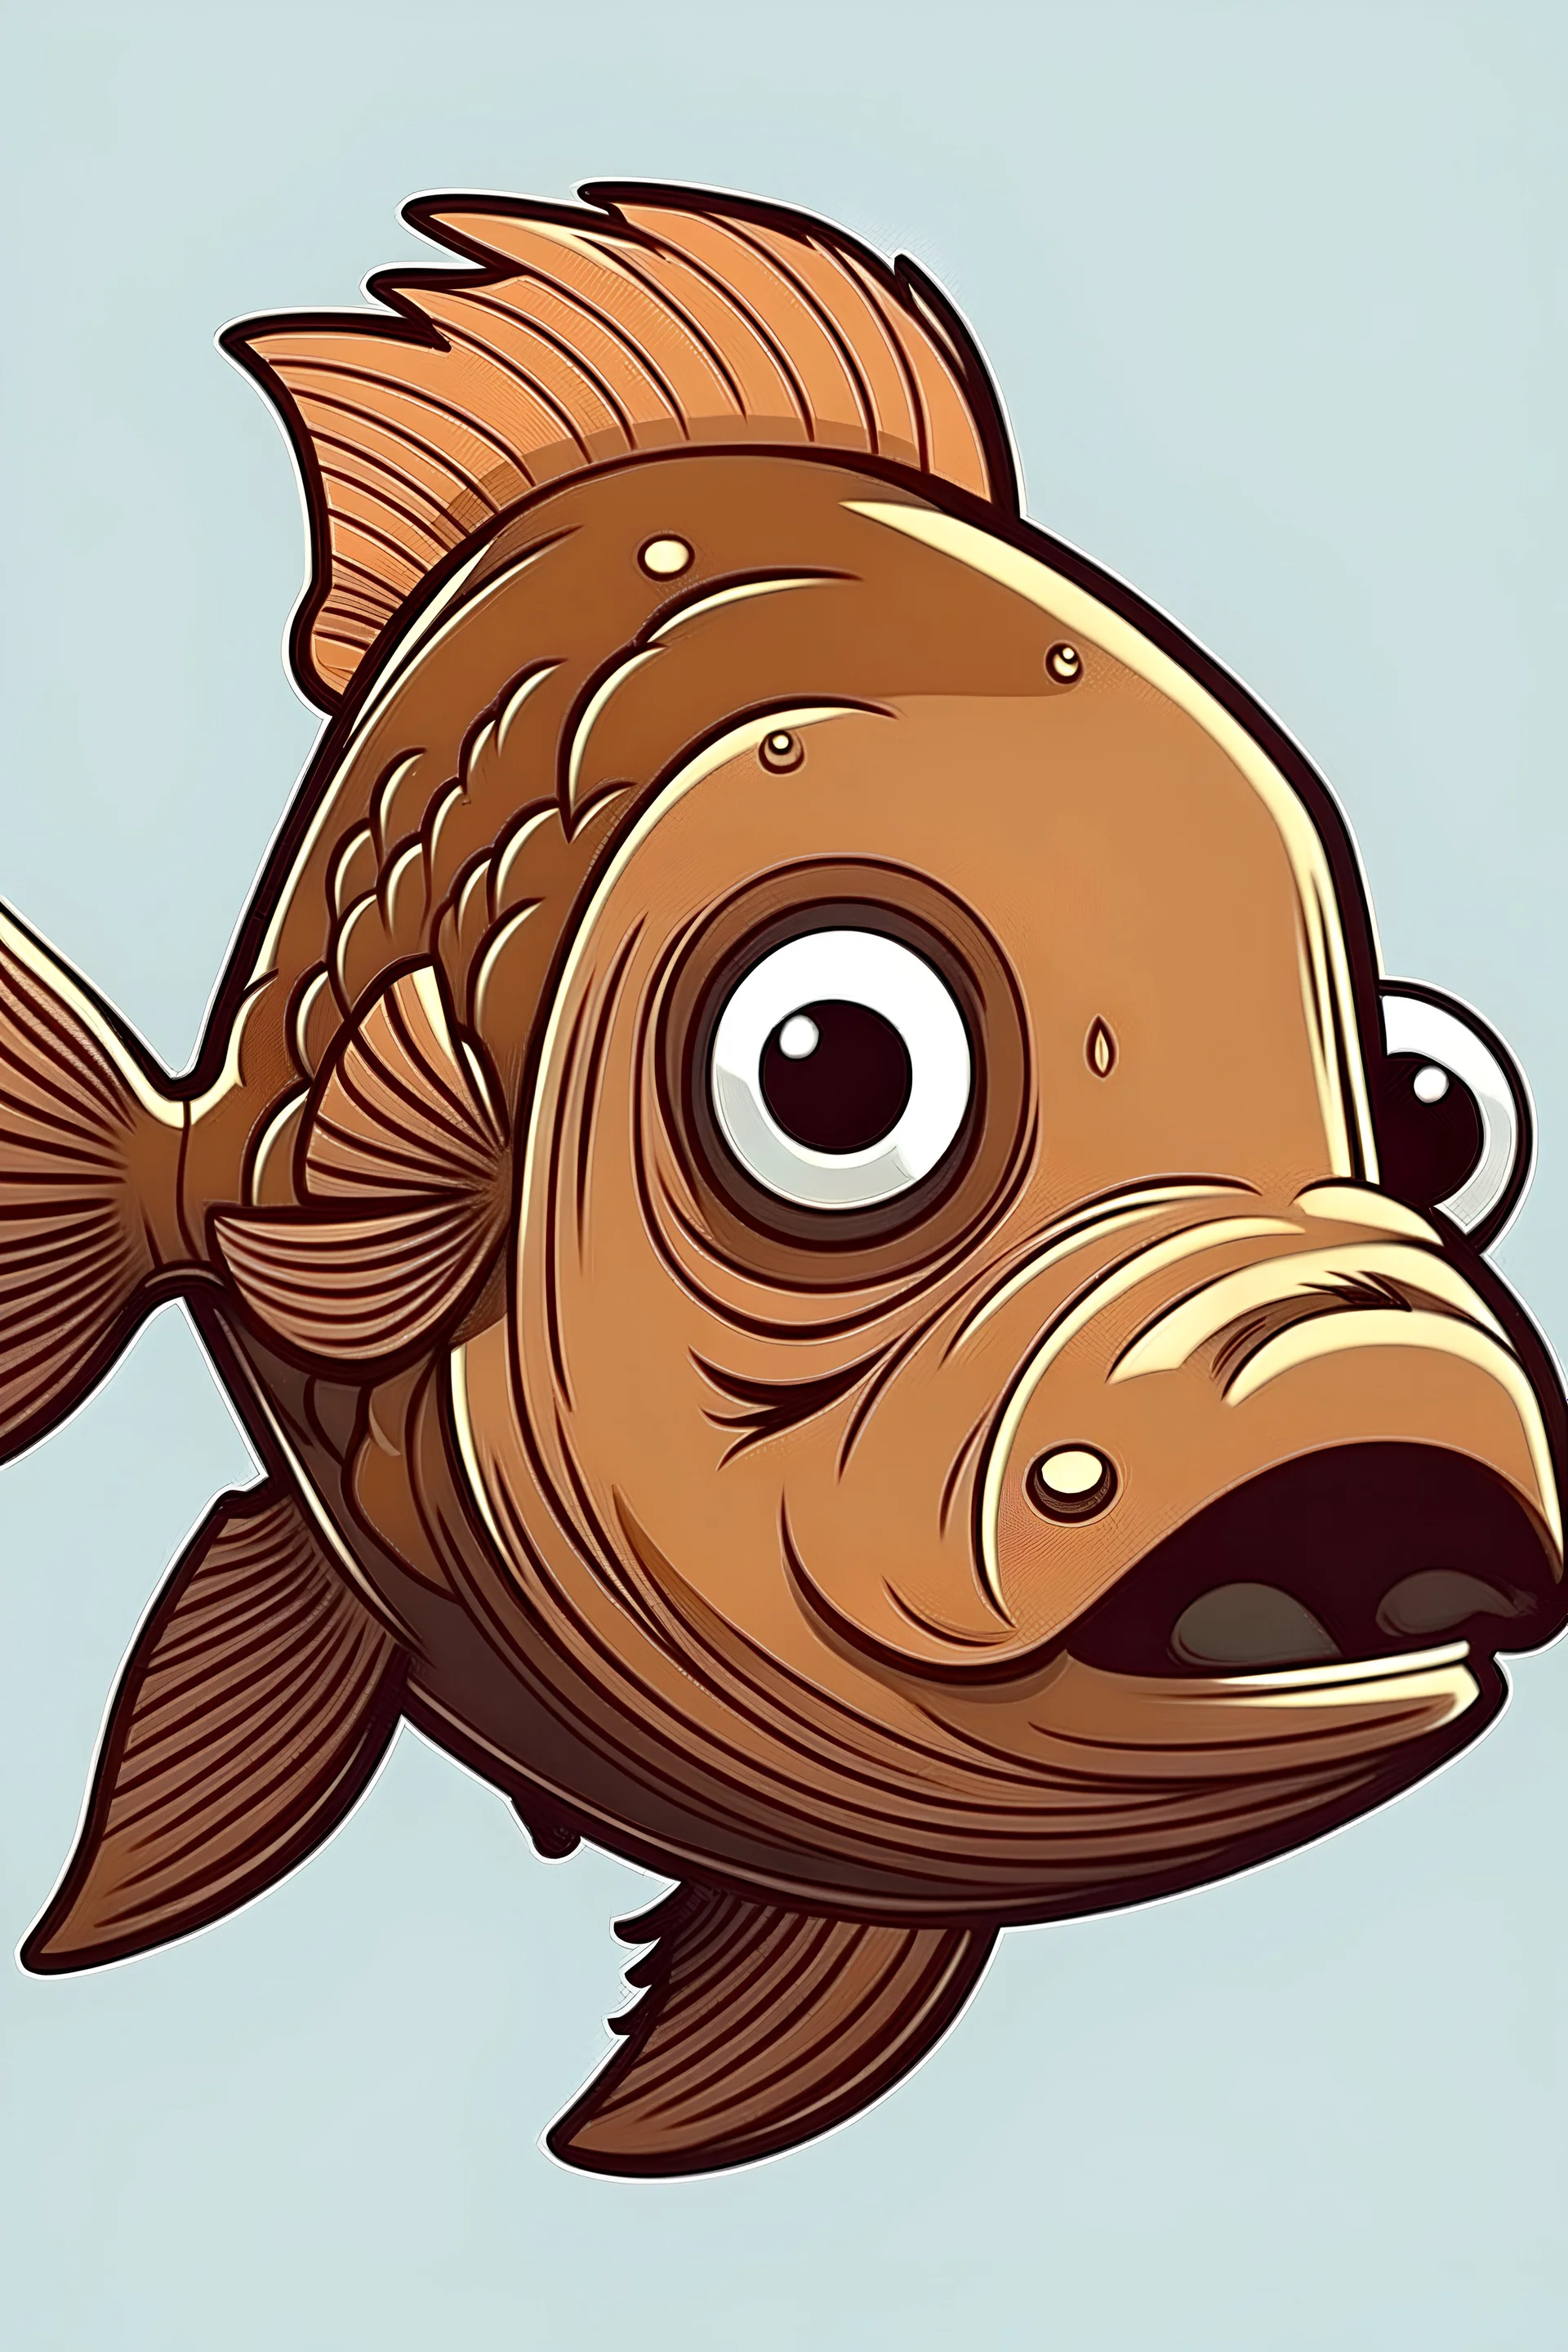 a fish on a brown bear's head cartoon style